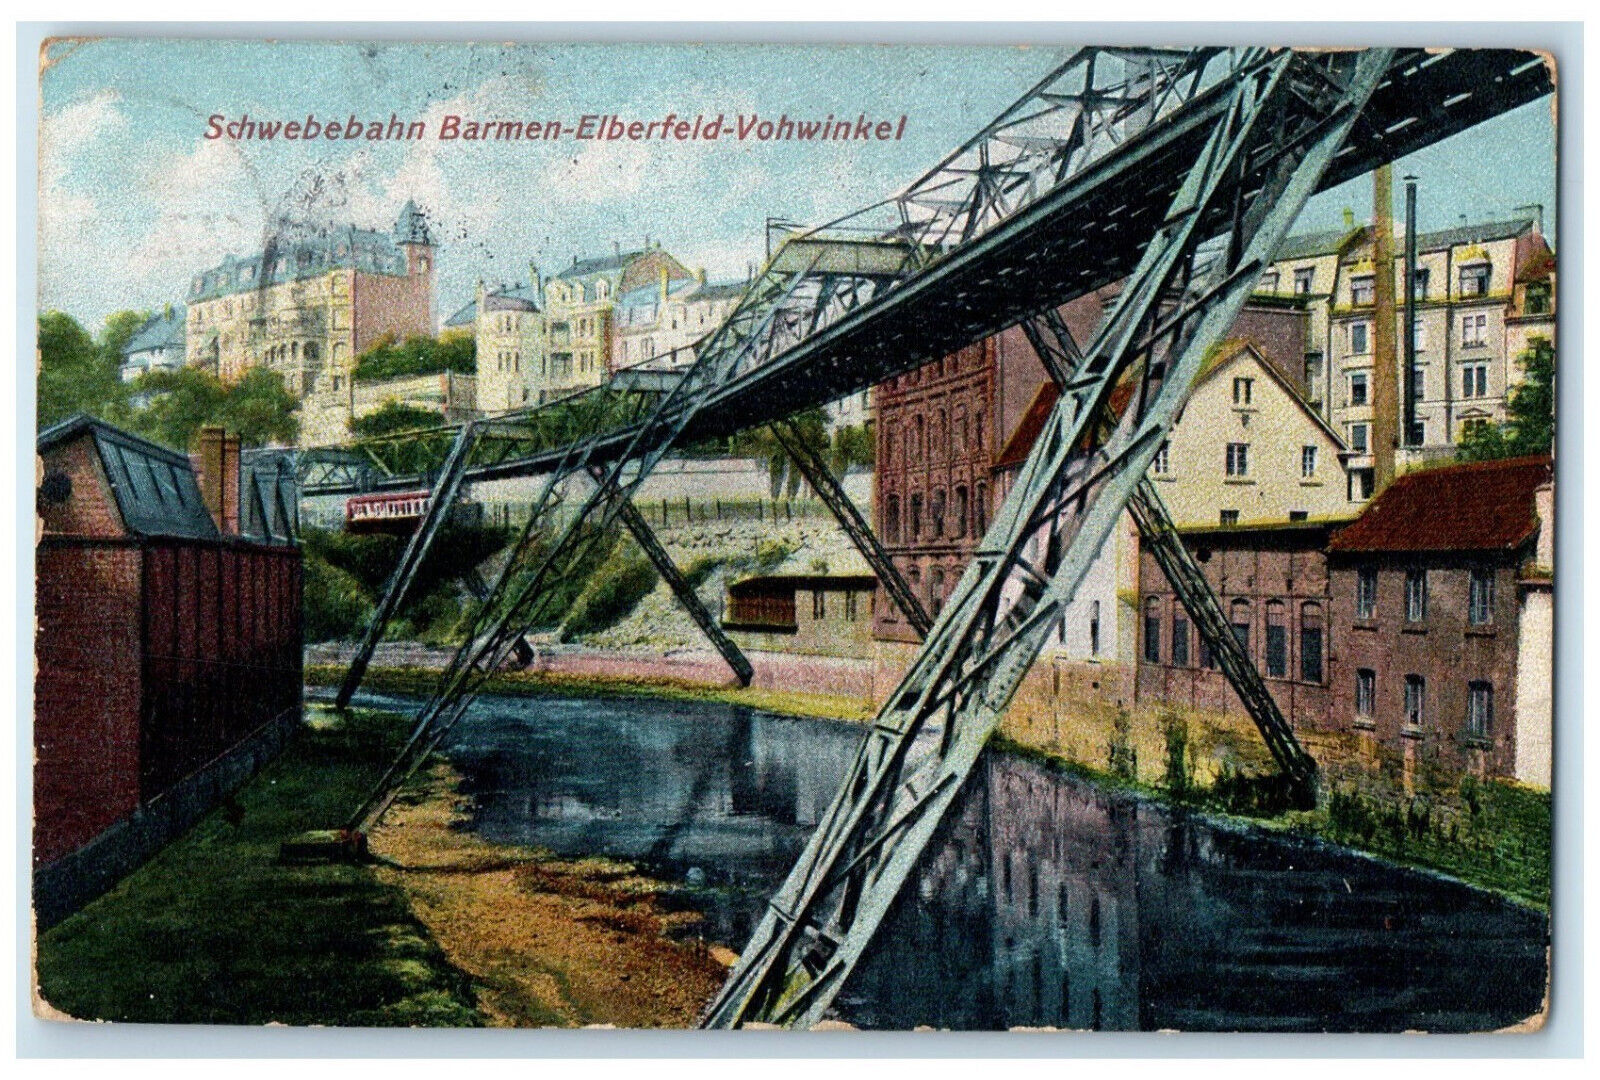 1908 Schwebebahn Barmen-Elberfeld-Vohwinkel Wuppertal Germany Postcard